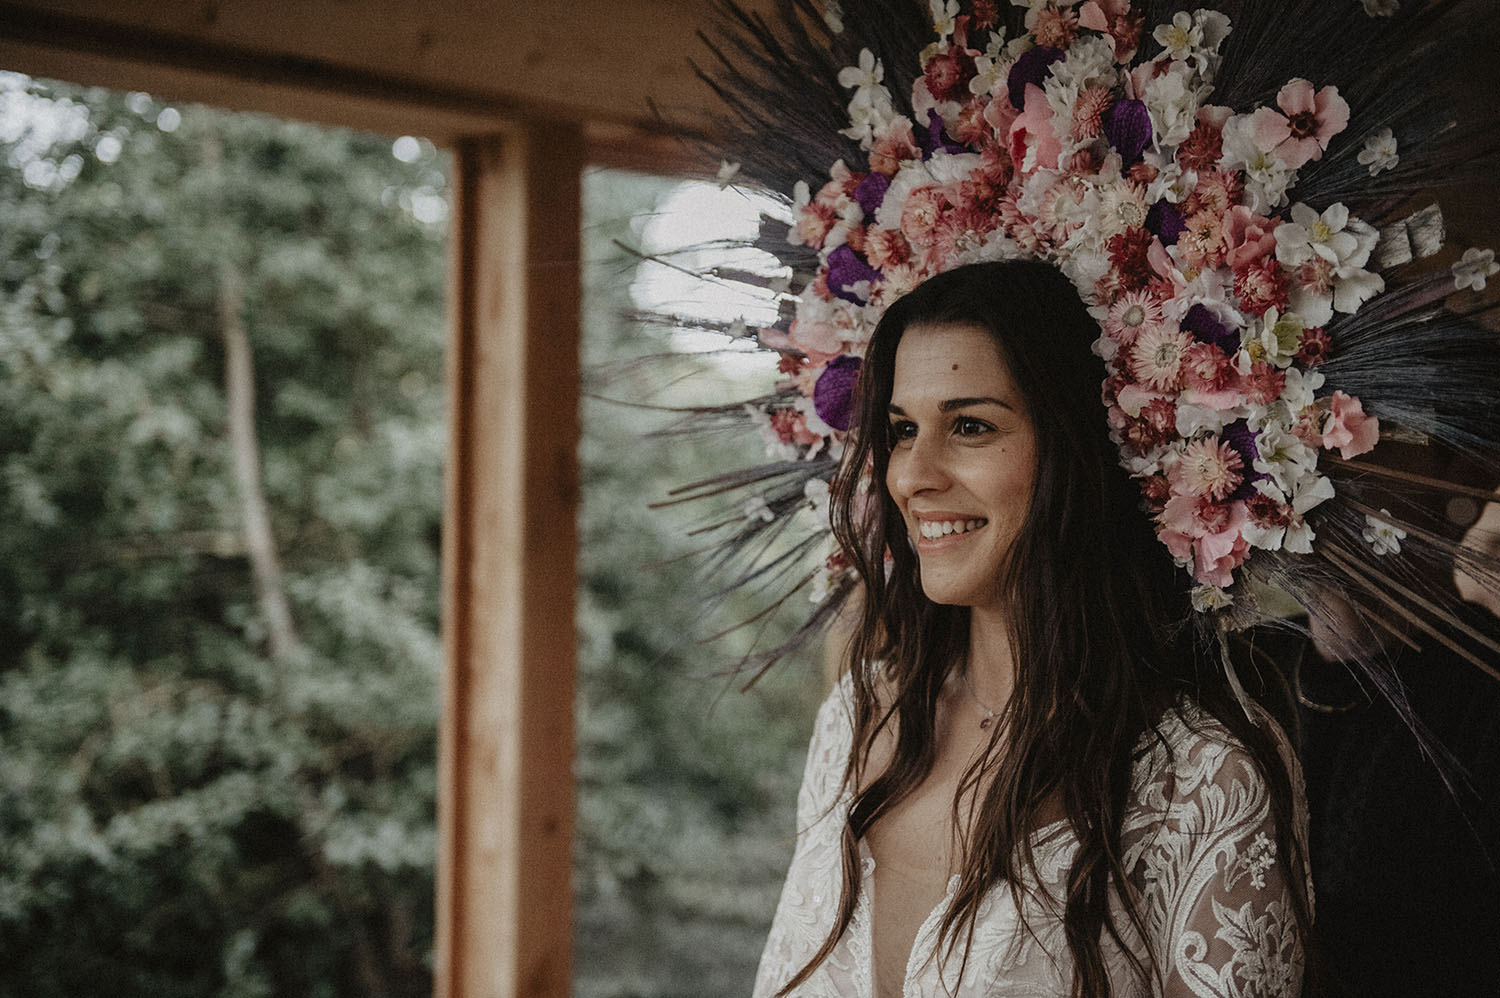 Mariée inspiration folk et rustique pour un mariage authentique au Coco Barn Wood Lodge dans les Landes, reportage photo lifestyle et moderne.